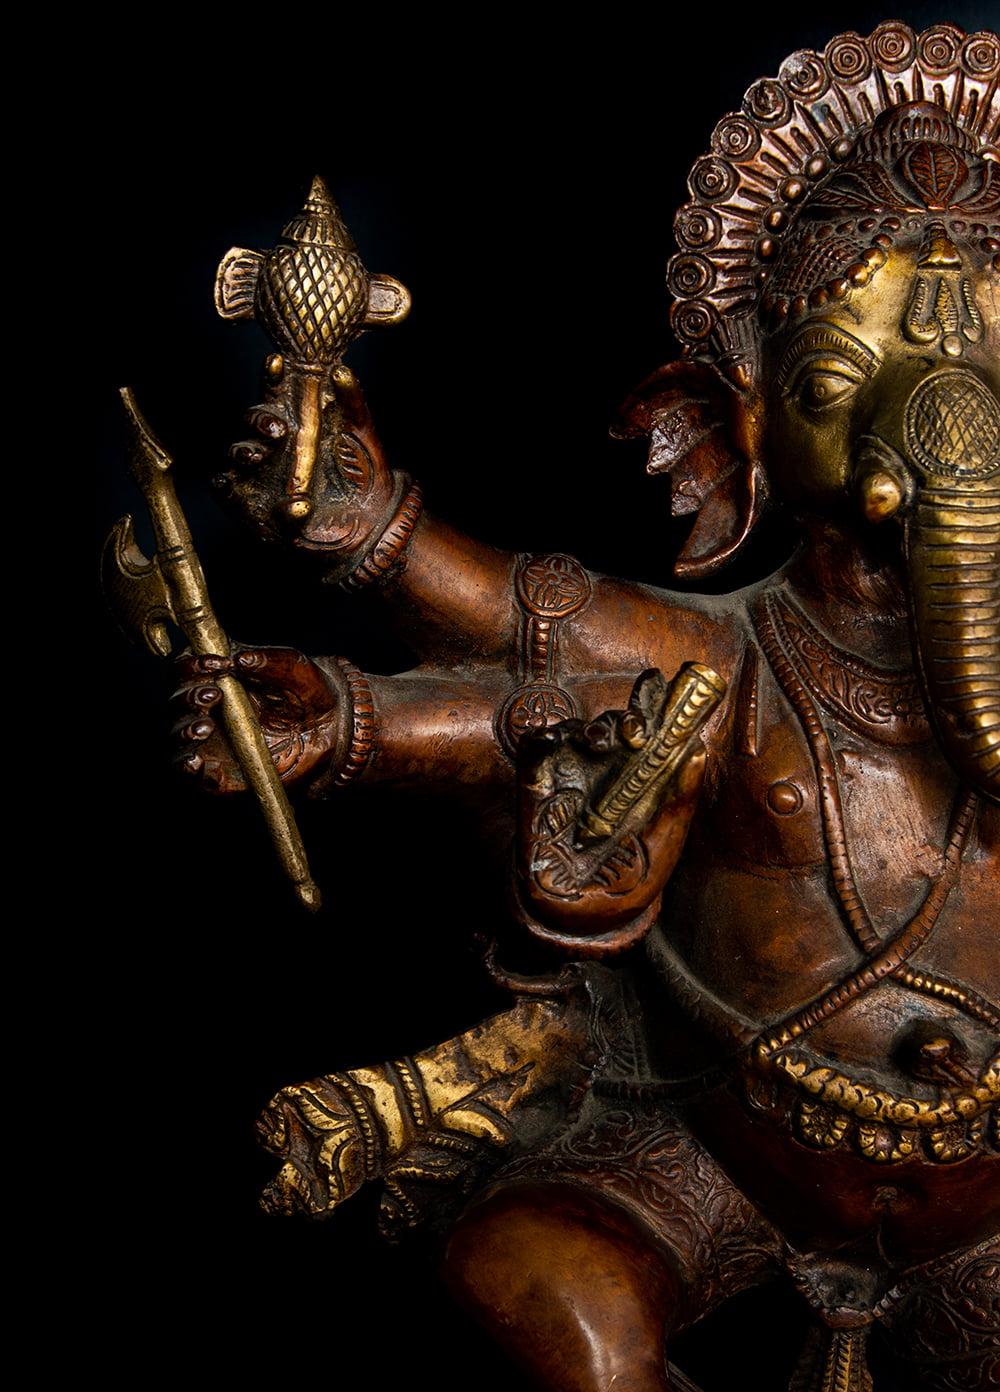 仏像 置物 ガネーシャ像 神様像 ダンシングガネーシャ 51cm インド